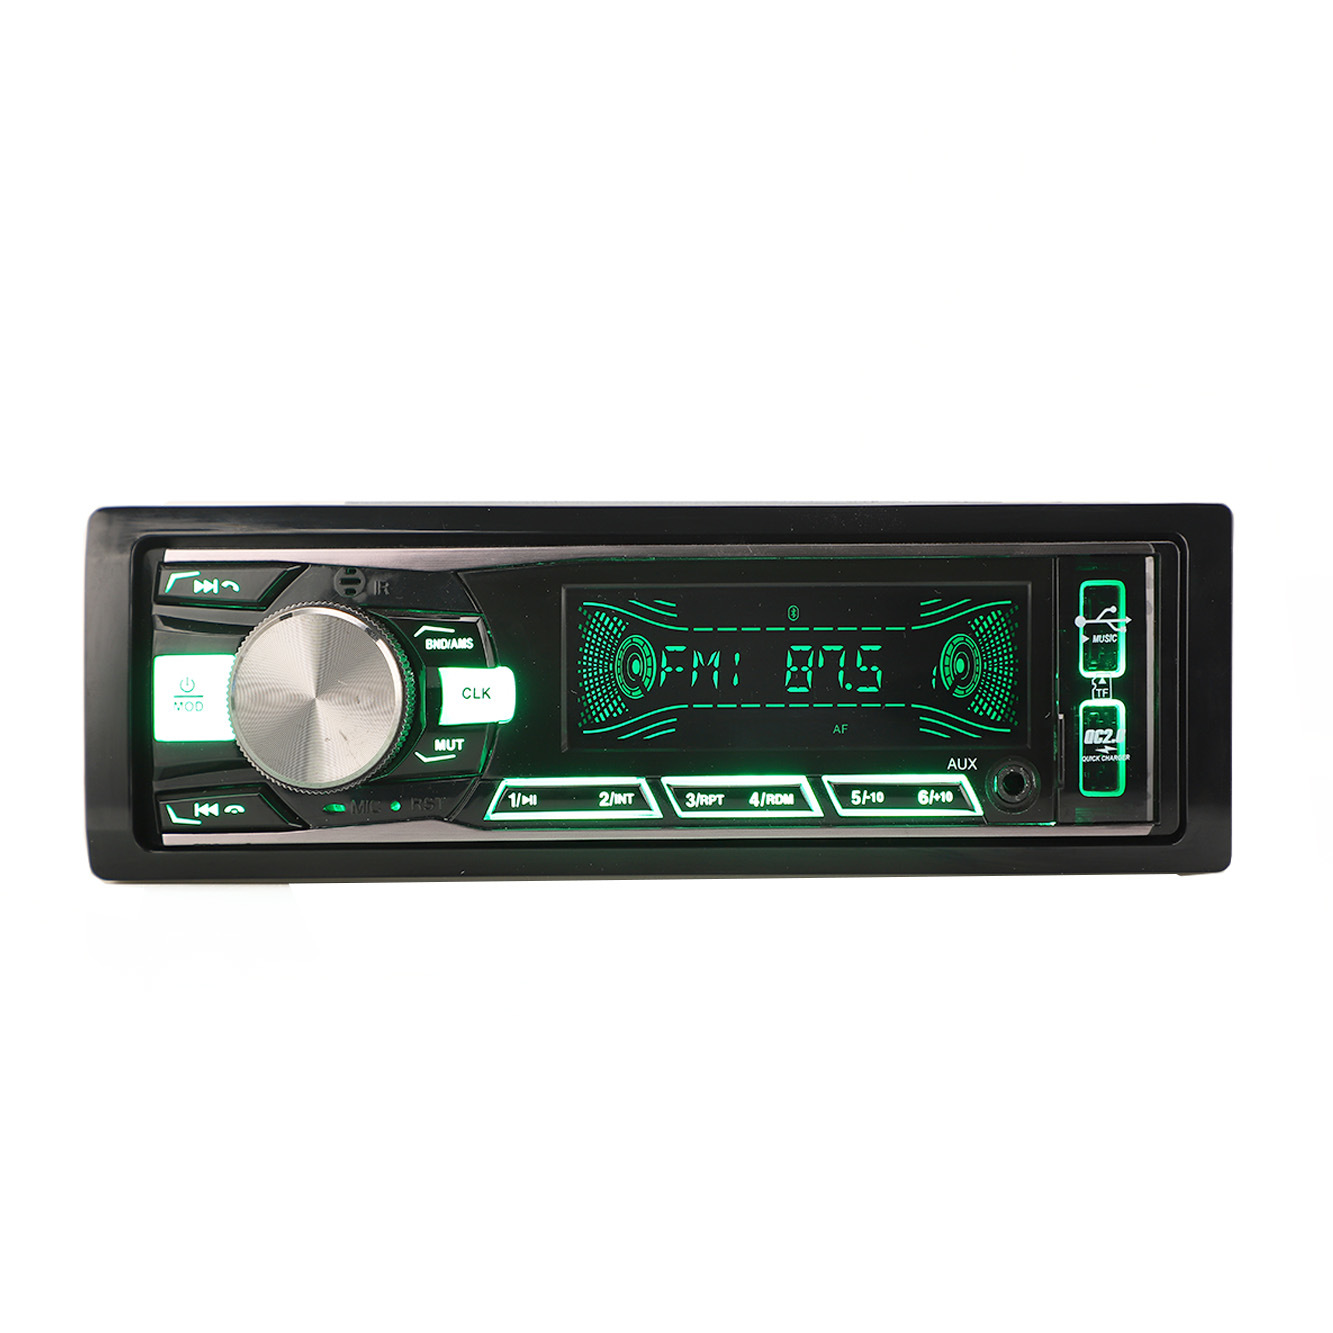 Painel fixo de áudio automático, reprodutor de mp3, transmissor fm, áudio estéreo para carro, acessórios para carro, din único, reprodutor de carro